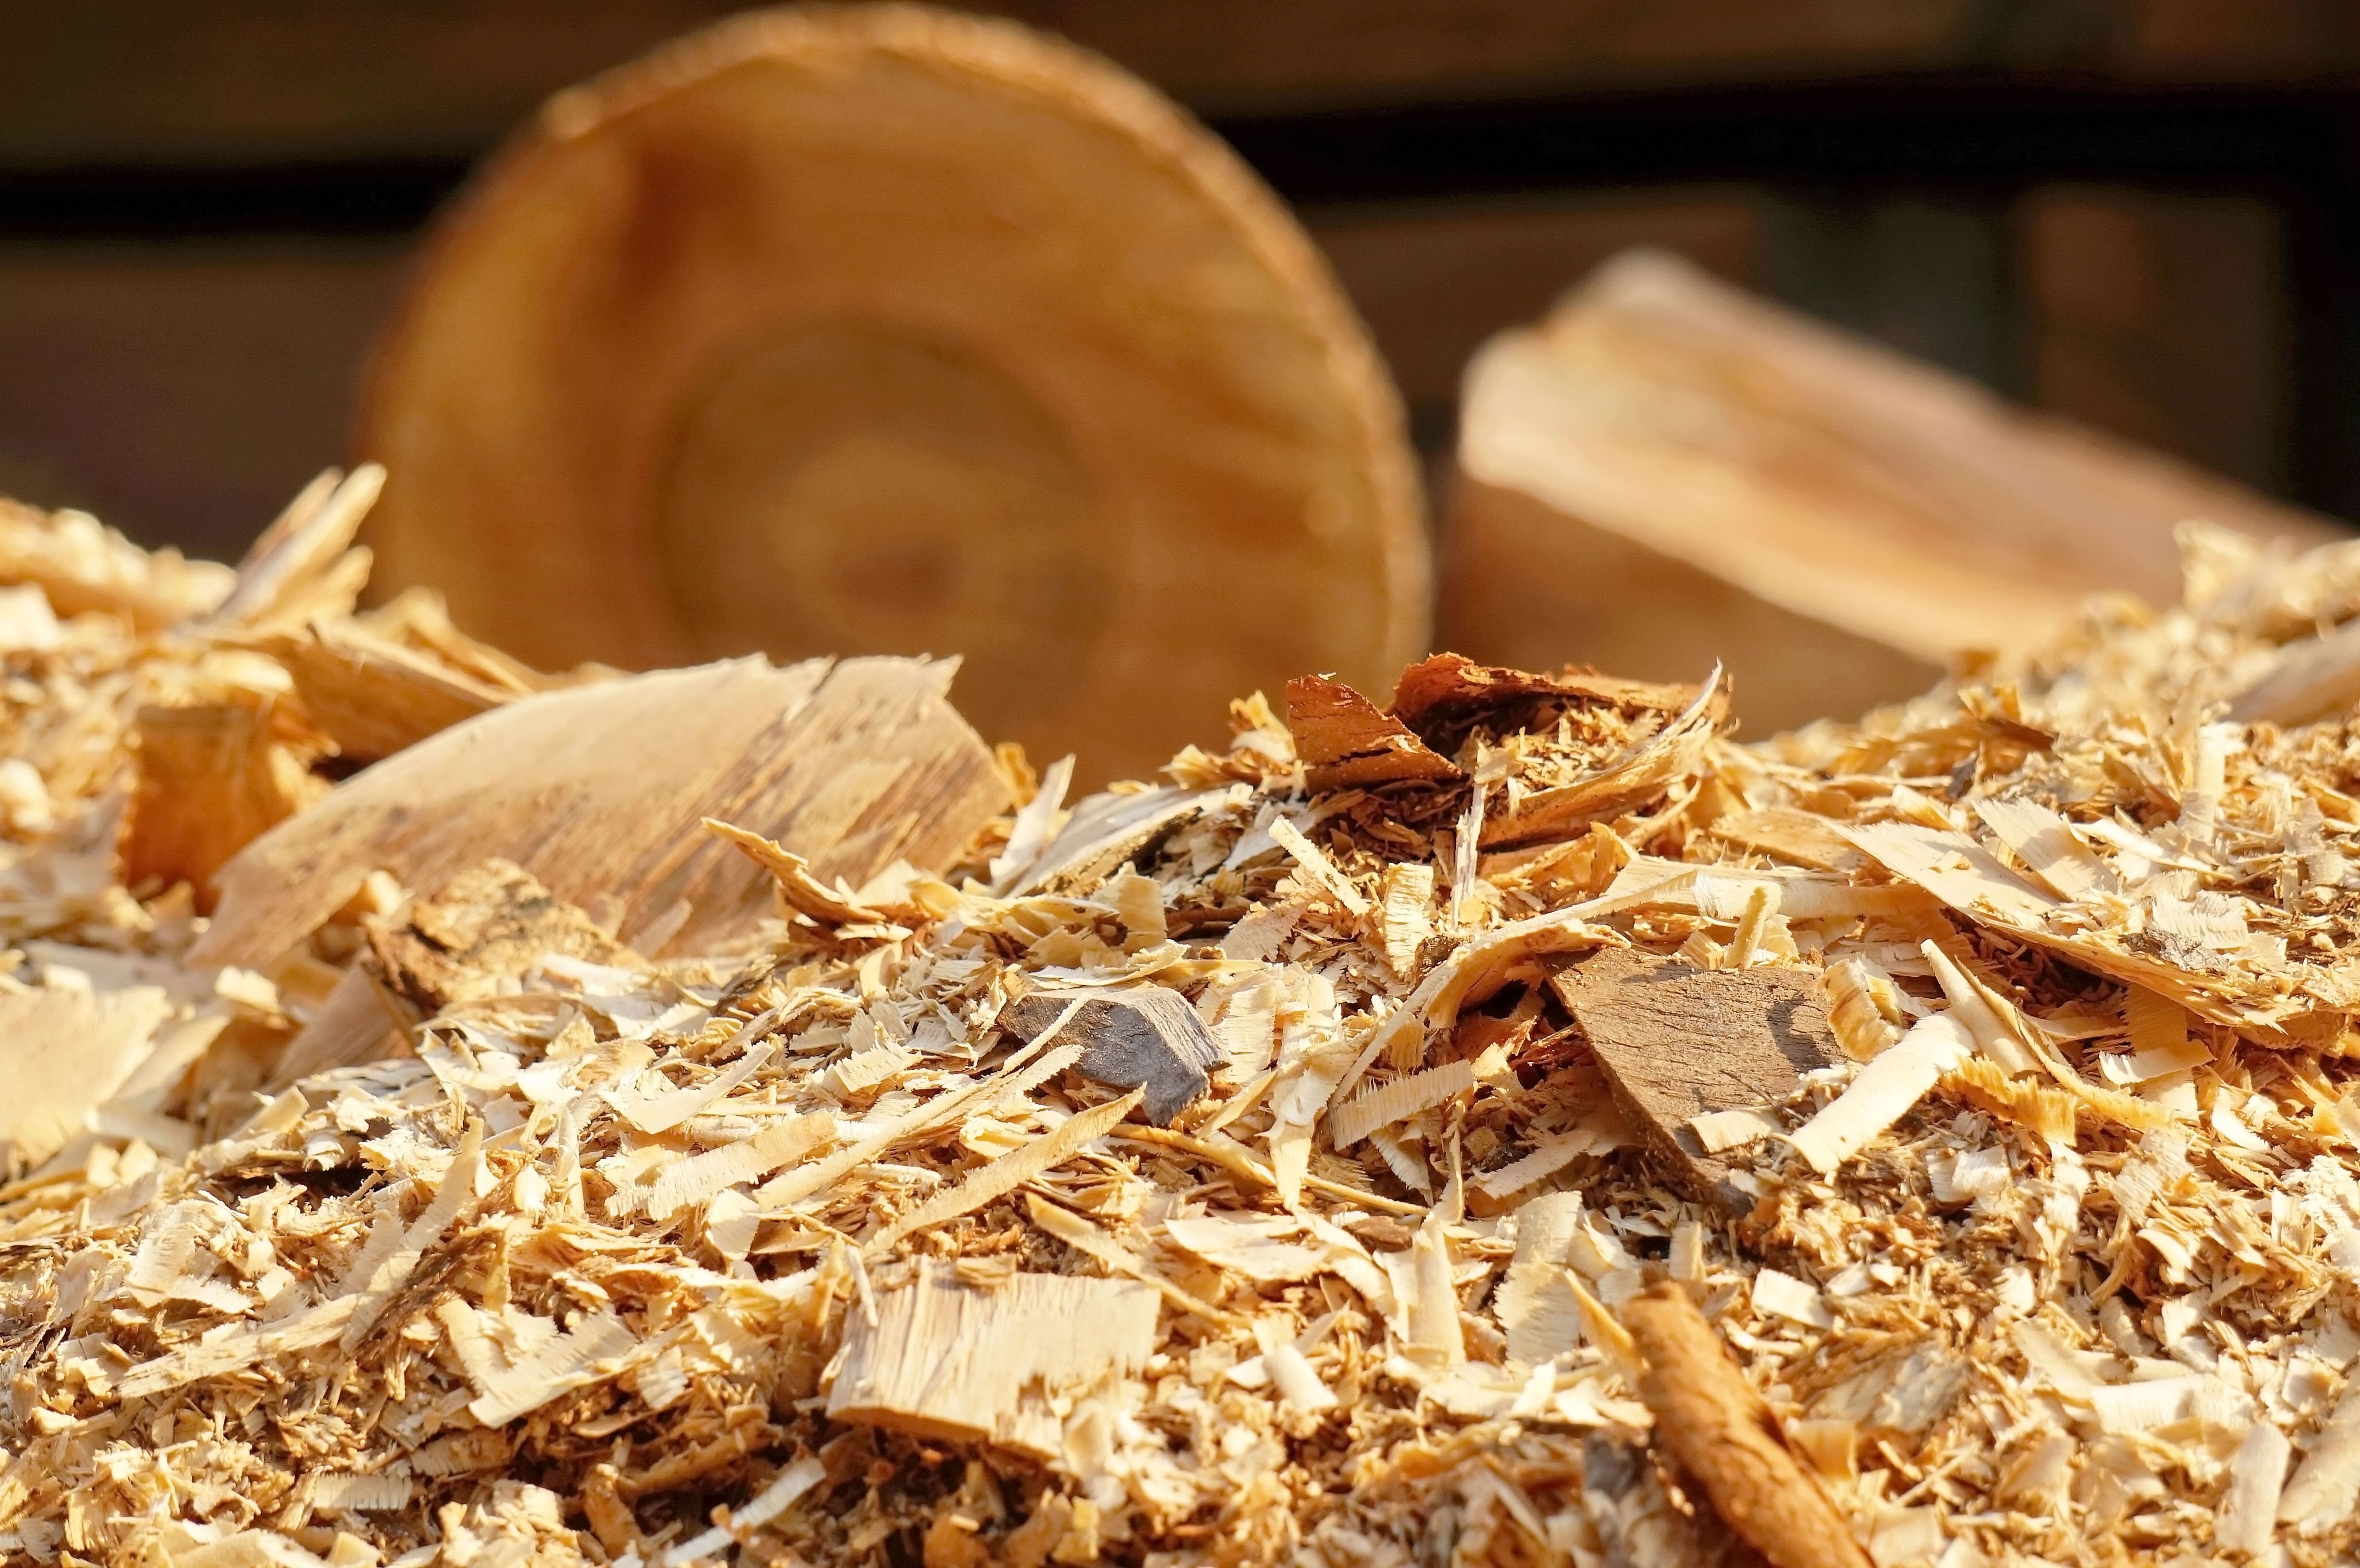 Le bois de sipo possède diverses caractéristiques intéressantes